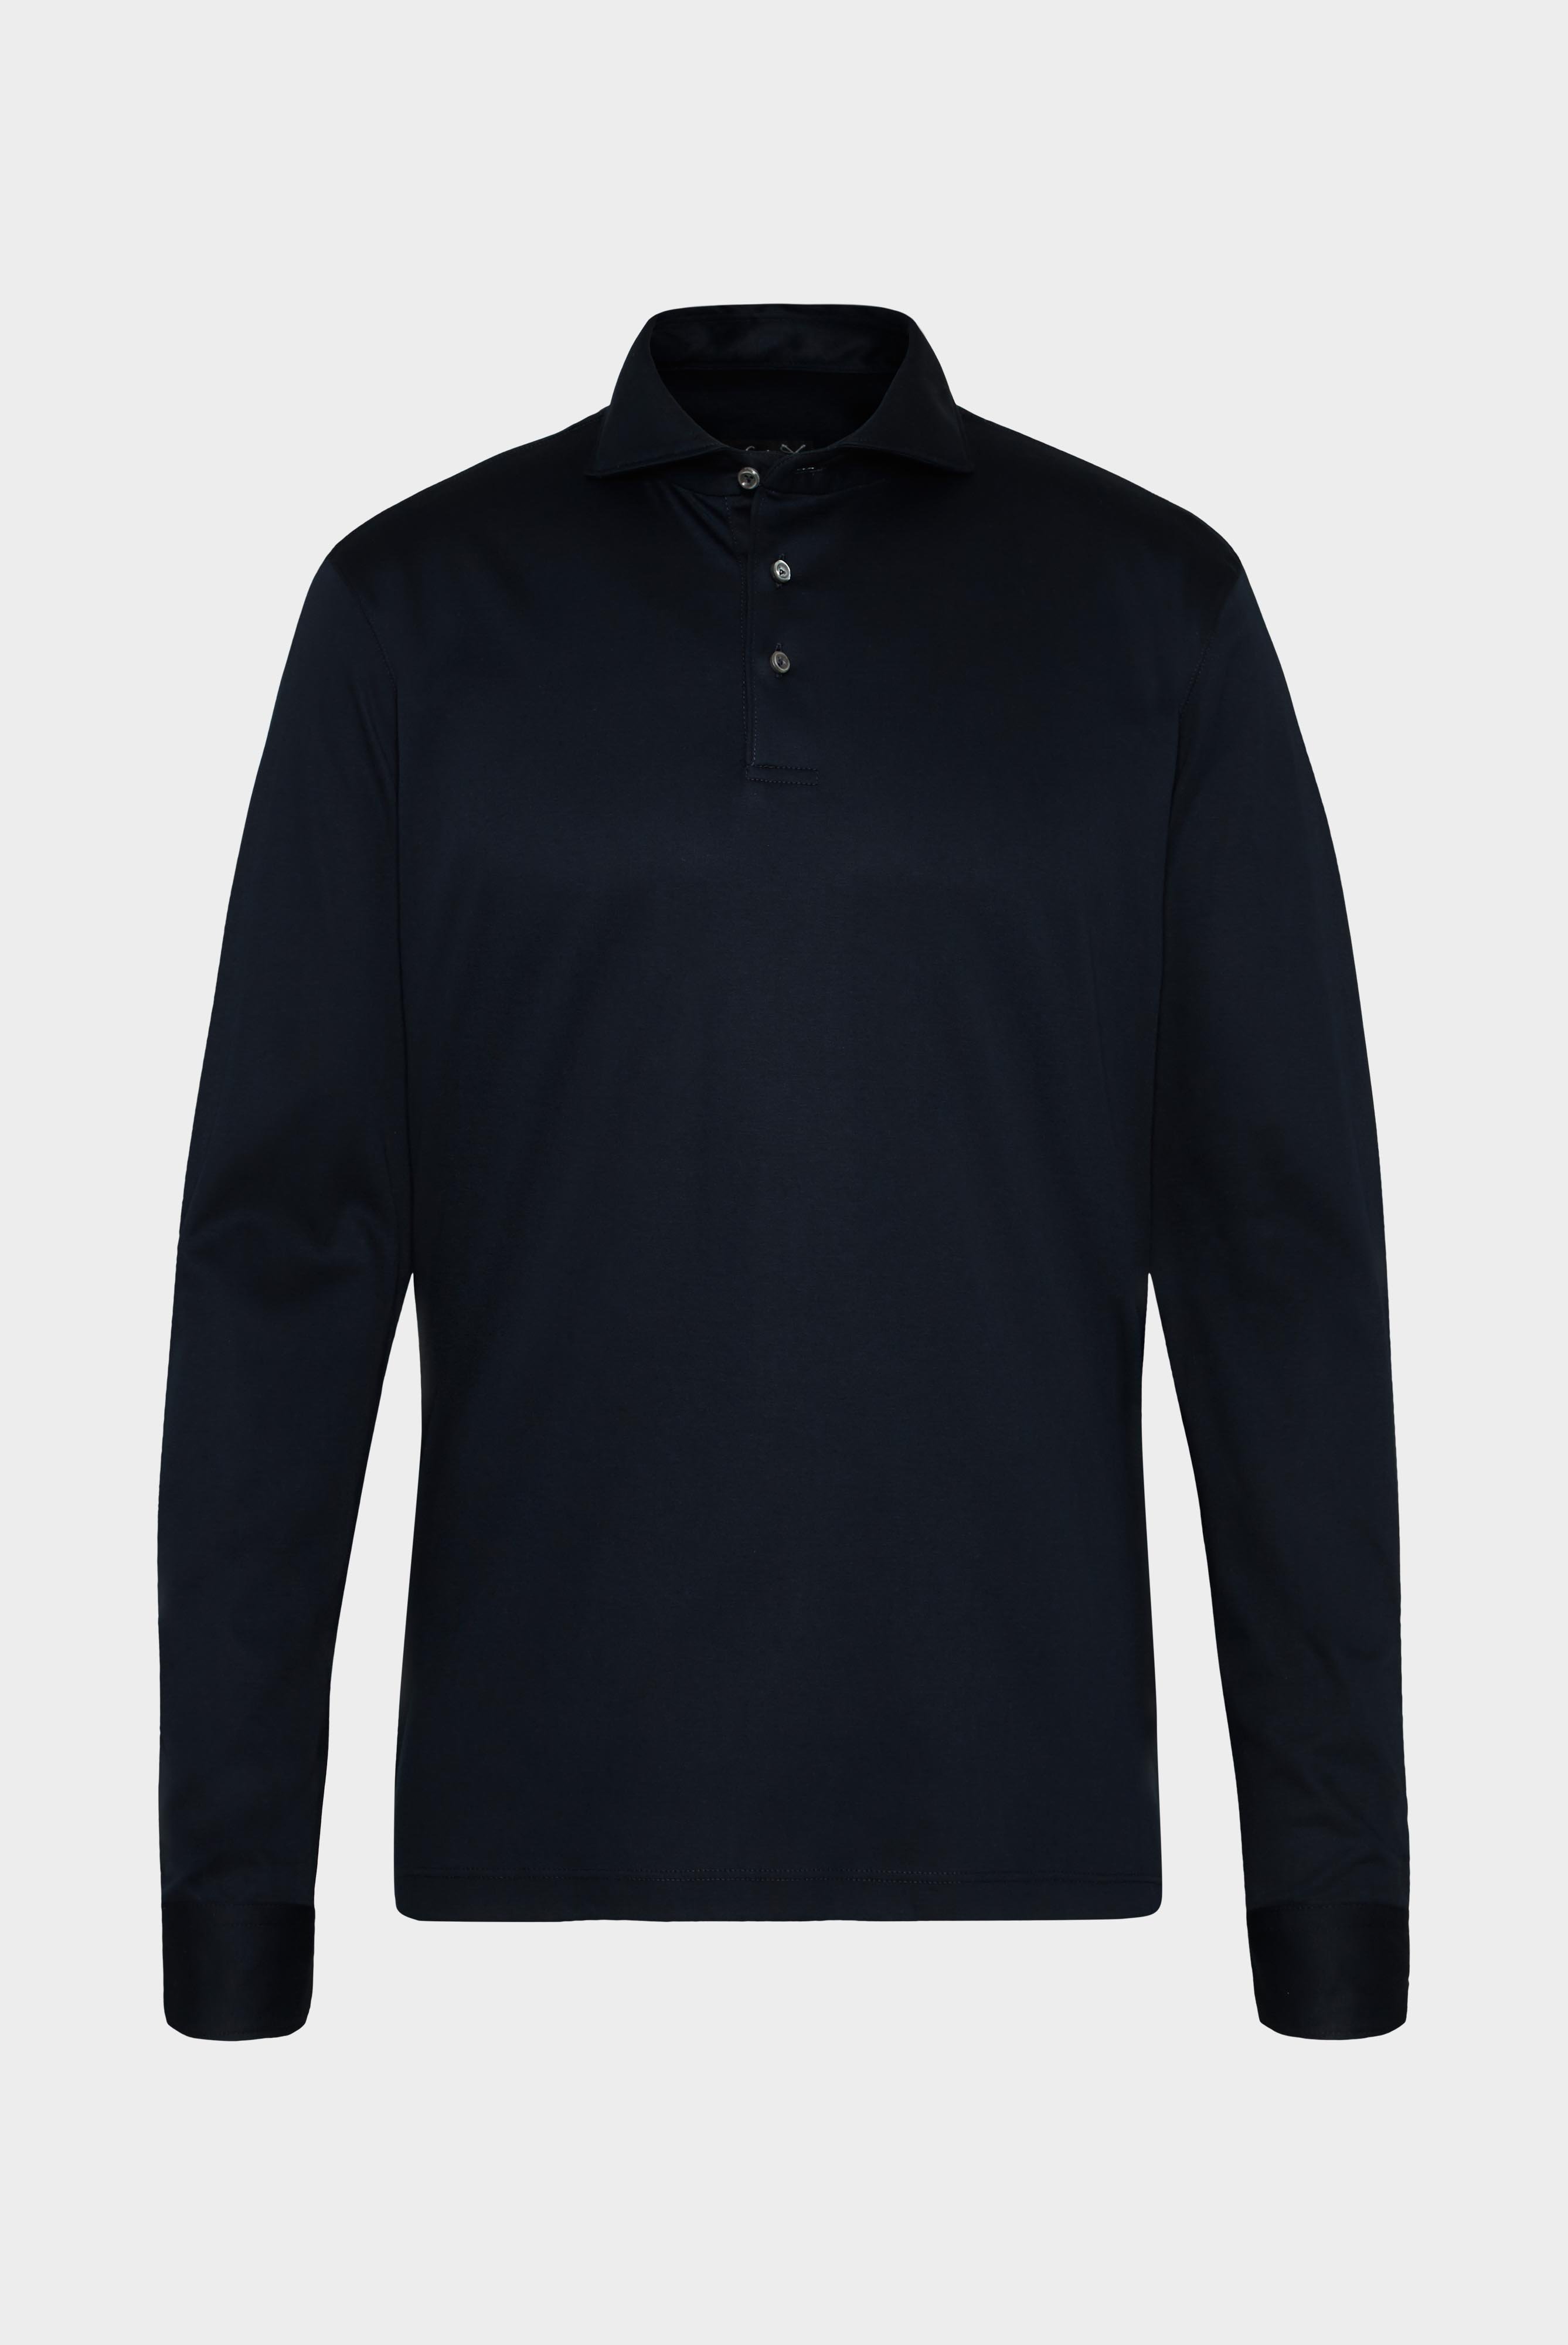 Poloshirts+Longsleeve Swiss Cotton Jersey Poloshirt+20.1726.UC.180031.790.XS